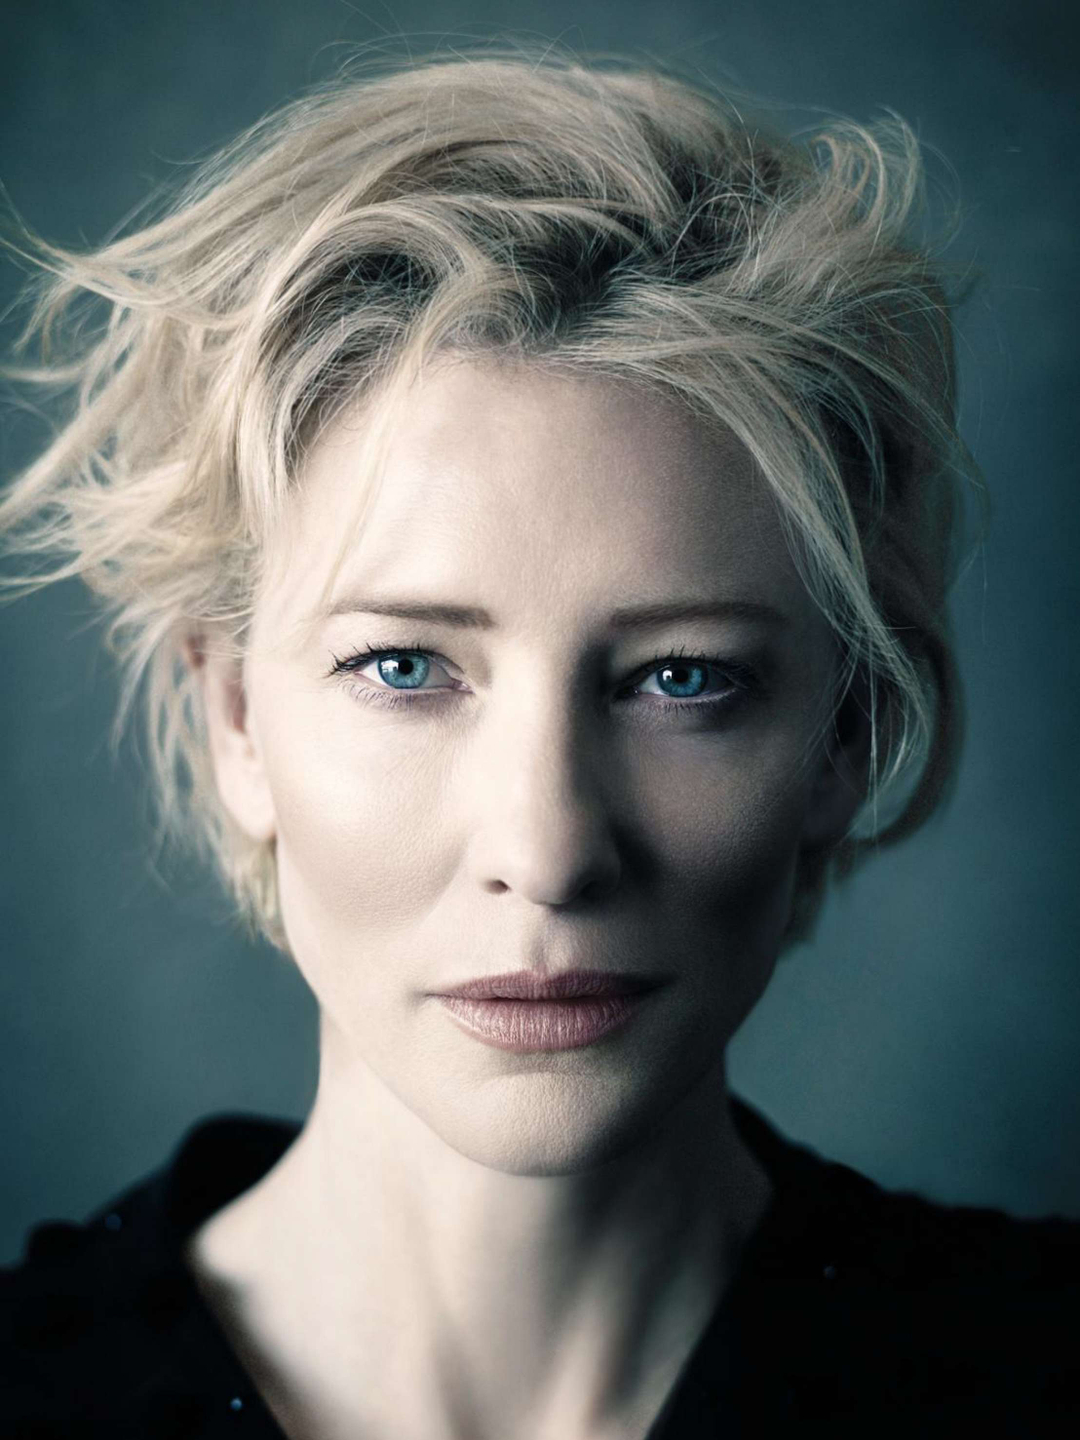 Cate Blanchett way to success